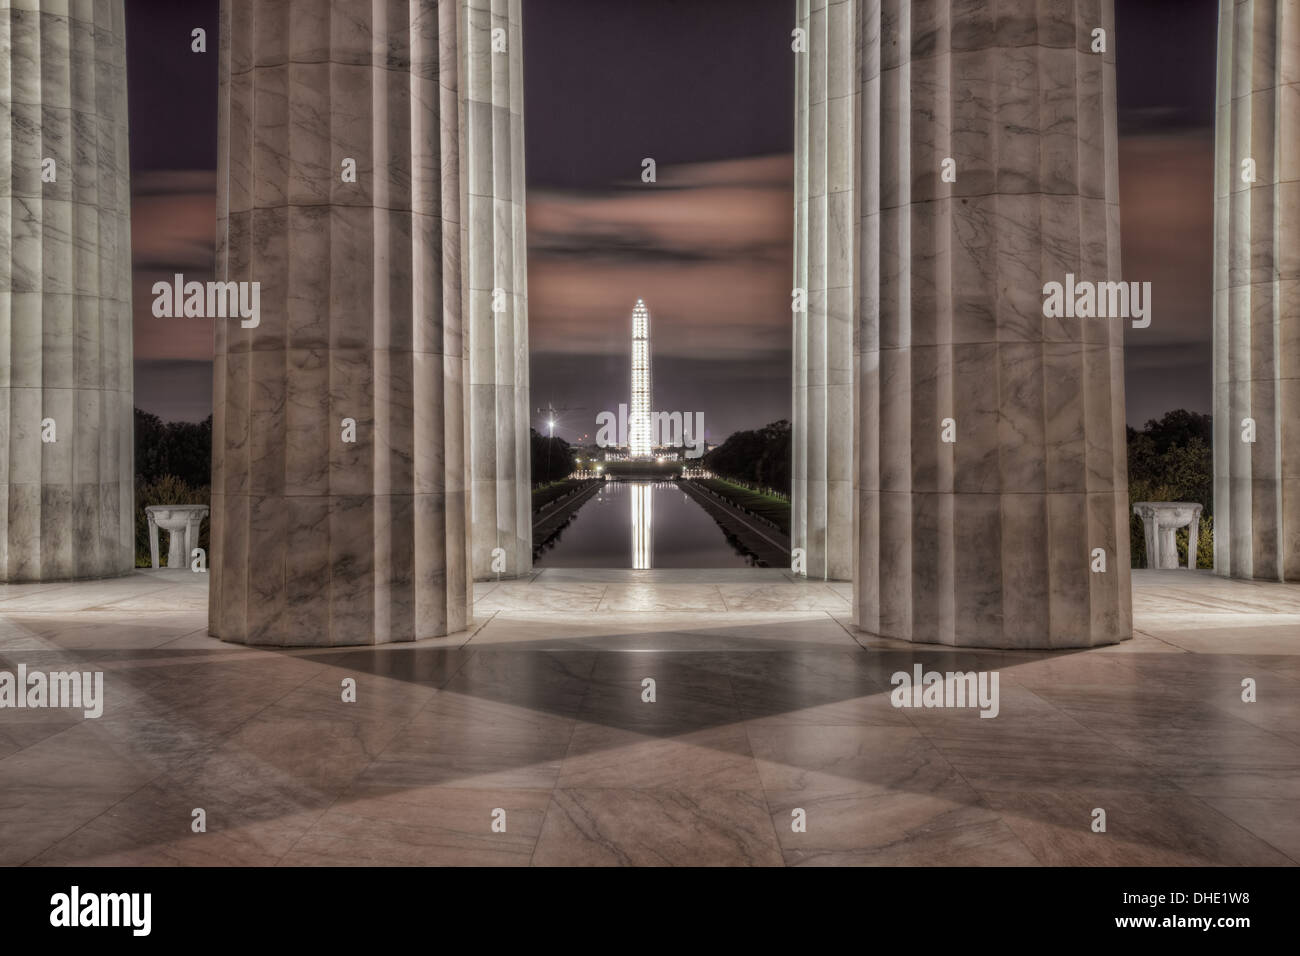 Le Washington Monument reflète dans le Lincoln Memorial Reflecting Pool, vue de l'intérieur du Mémorial de Lincoln avant le lever du soleil à Washington, DC. Banque D'Images